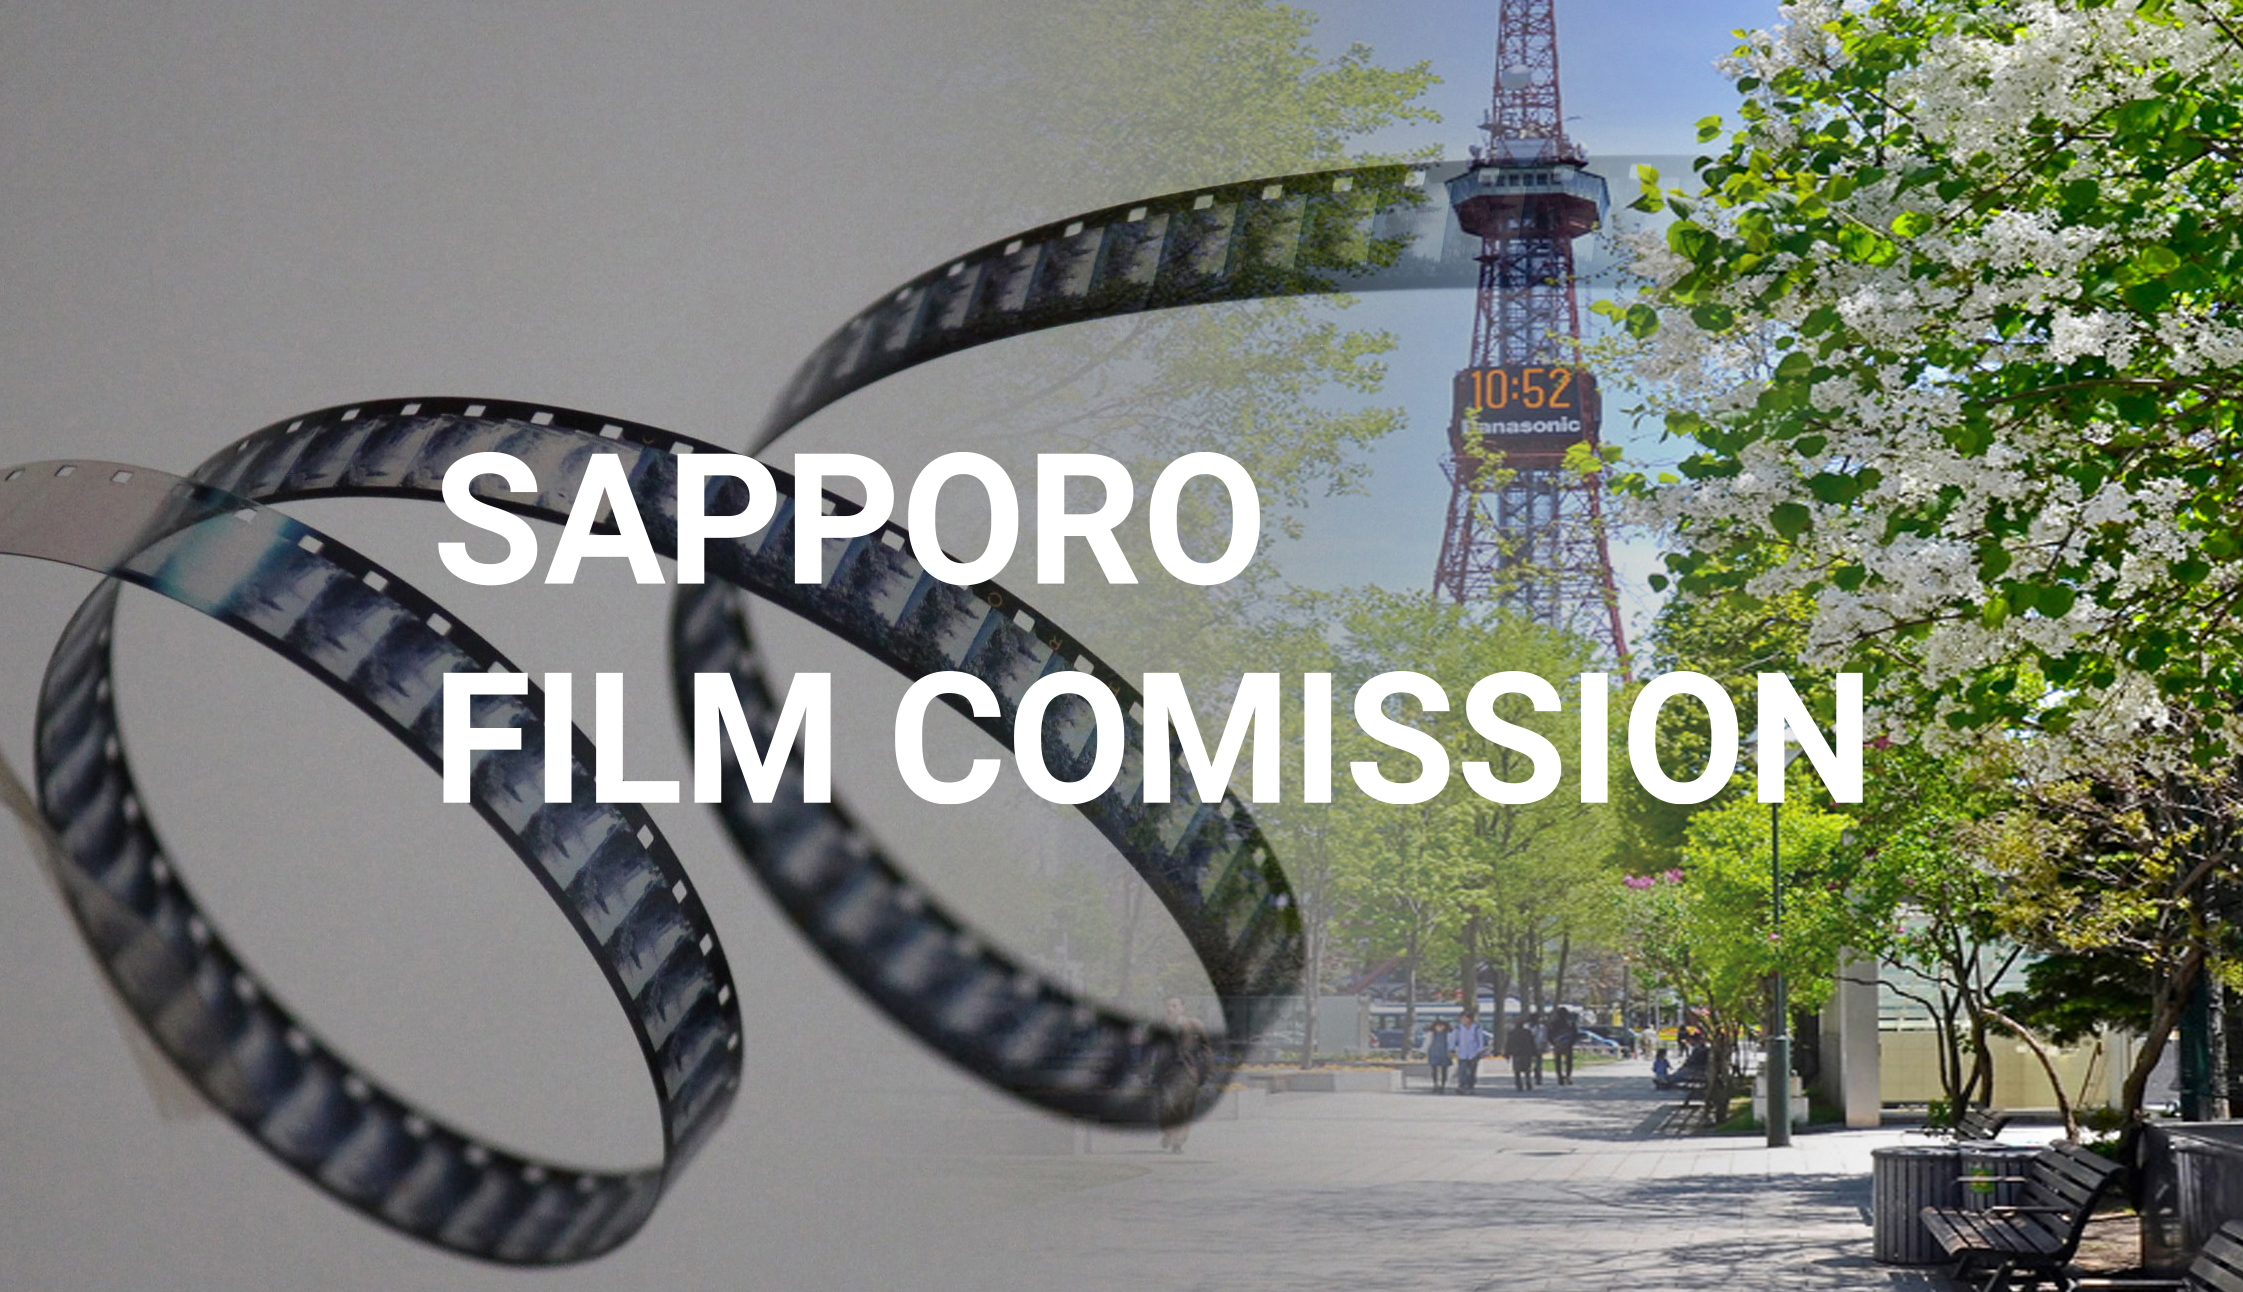 「札幌フィルムコミッション」さっぽろのまちを、あらゆる映像の舞台に。